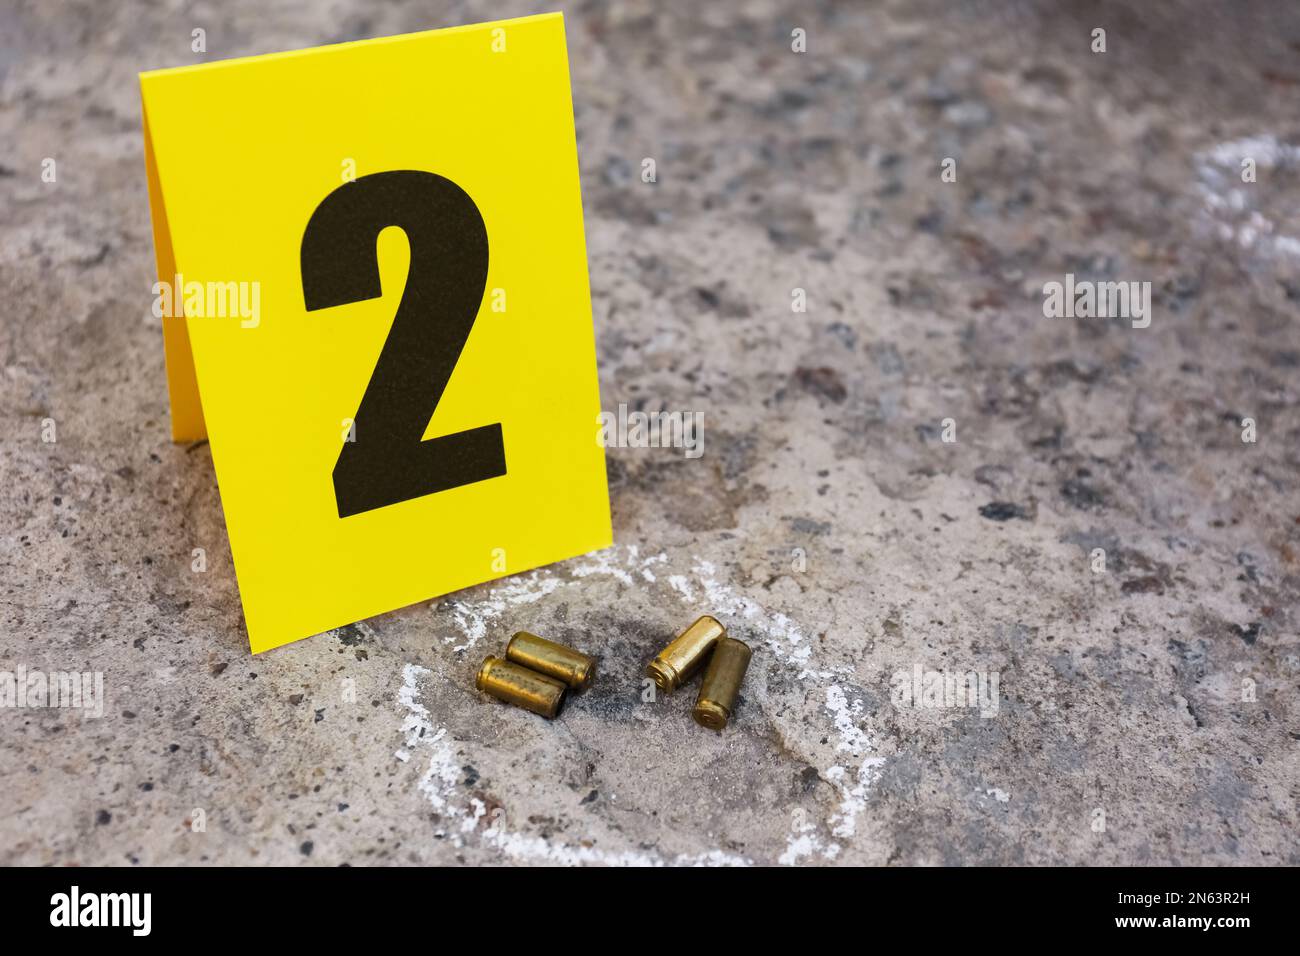 Scène de crime avec des obus de balle et une marque de preuve sur le sol. Enquête de détective Banque D'Images